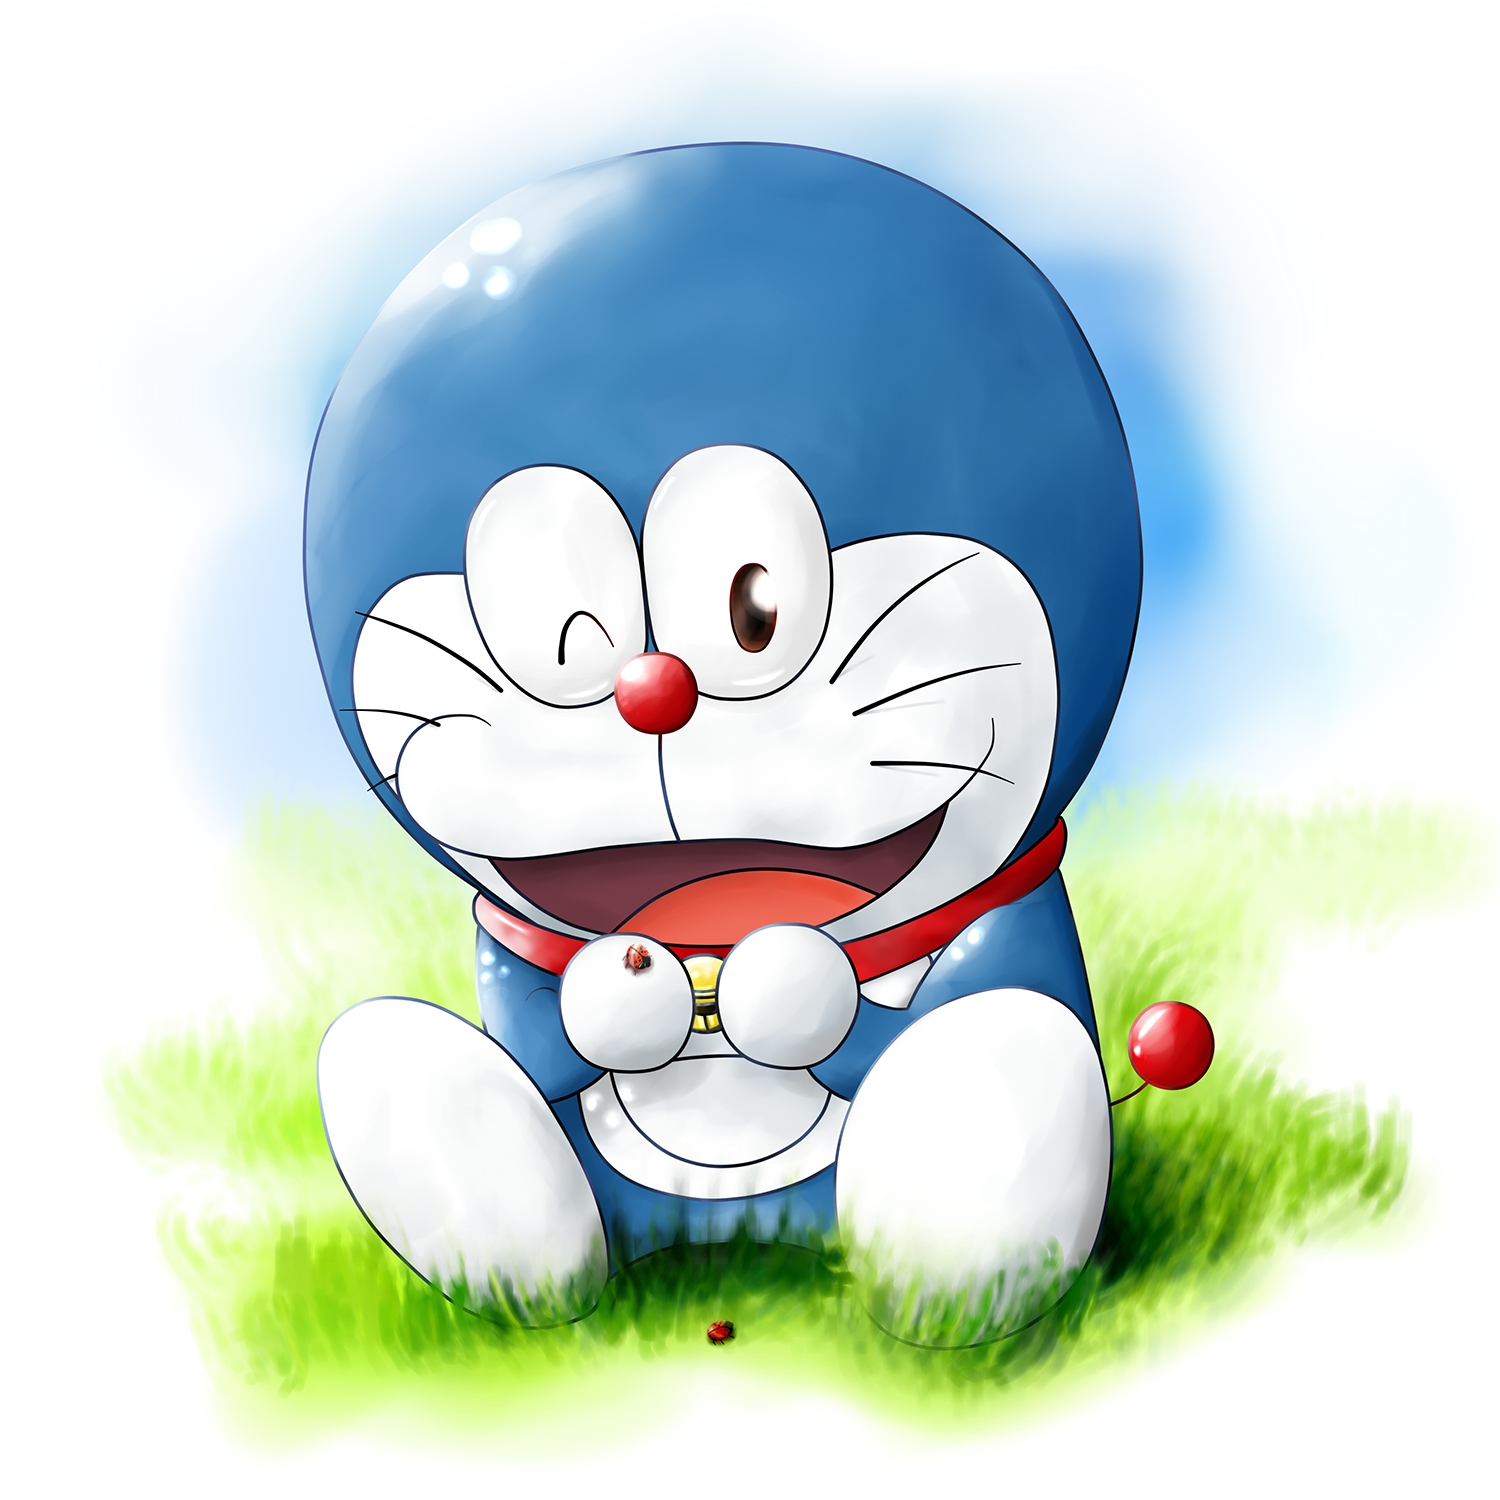 Doraemon Backgrounds, Compatible - PC, Mobile, Gadgets| 1500x1500 px